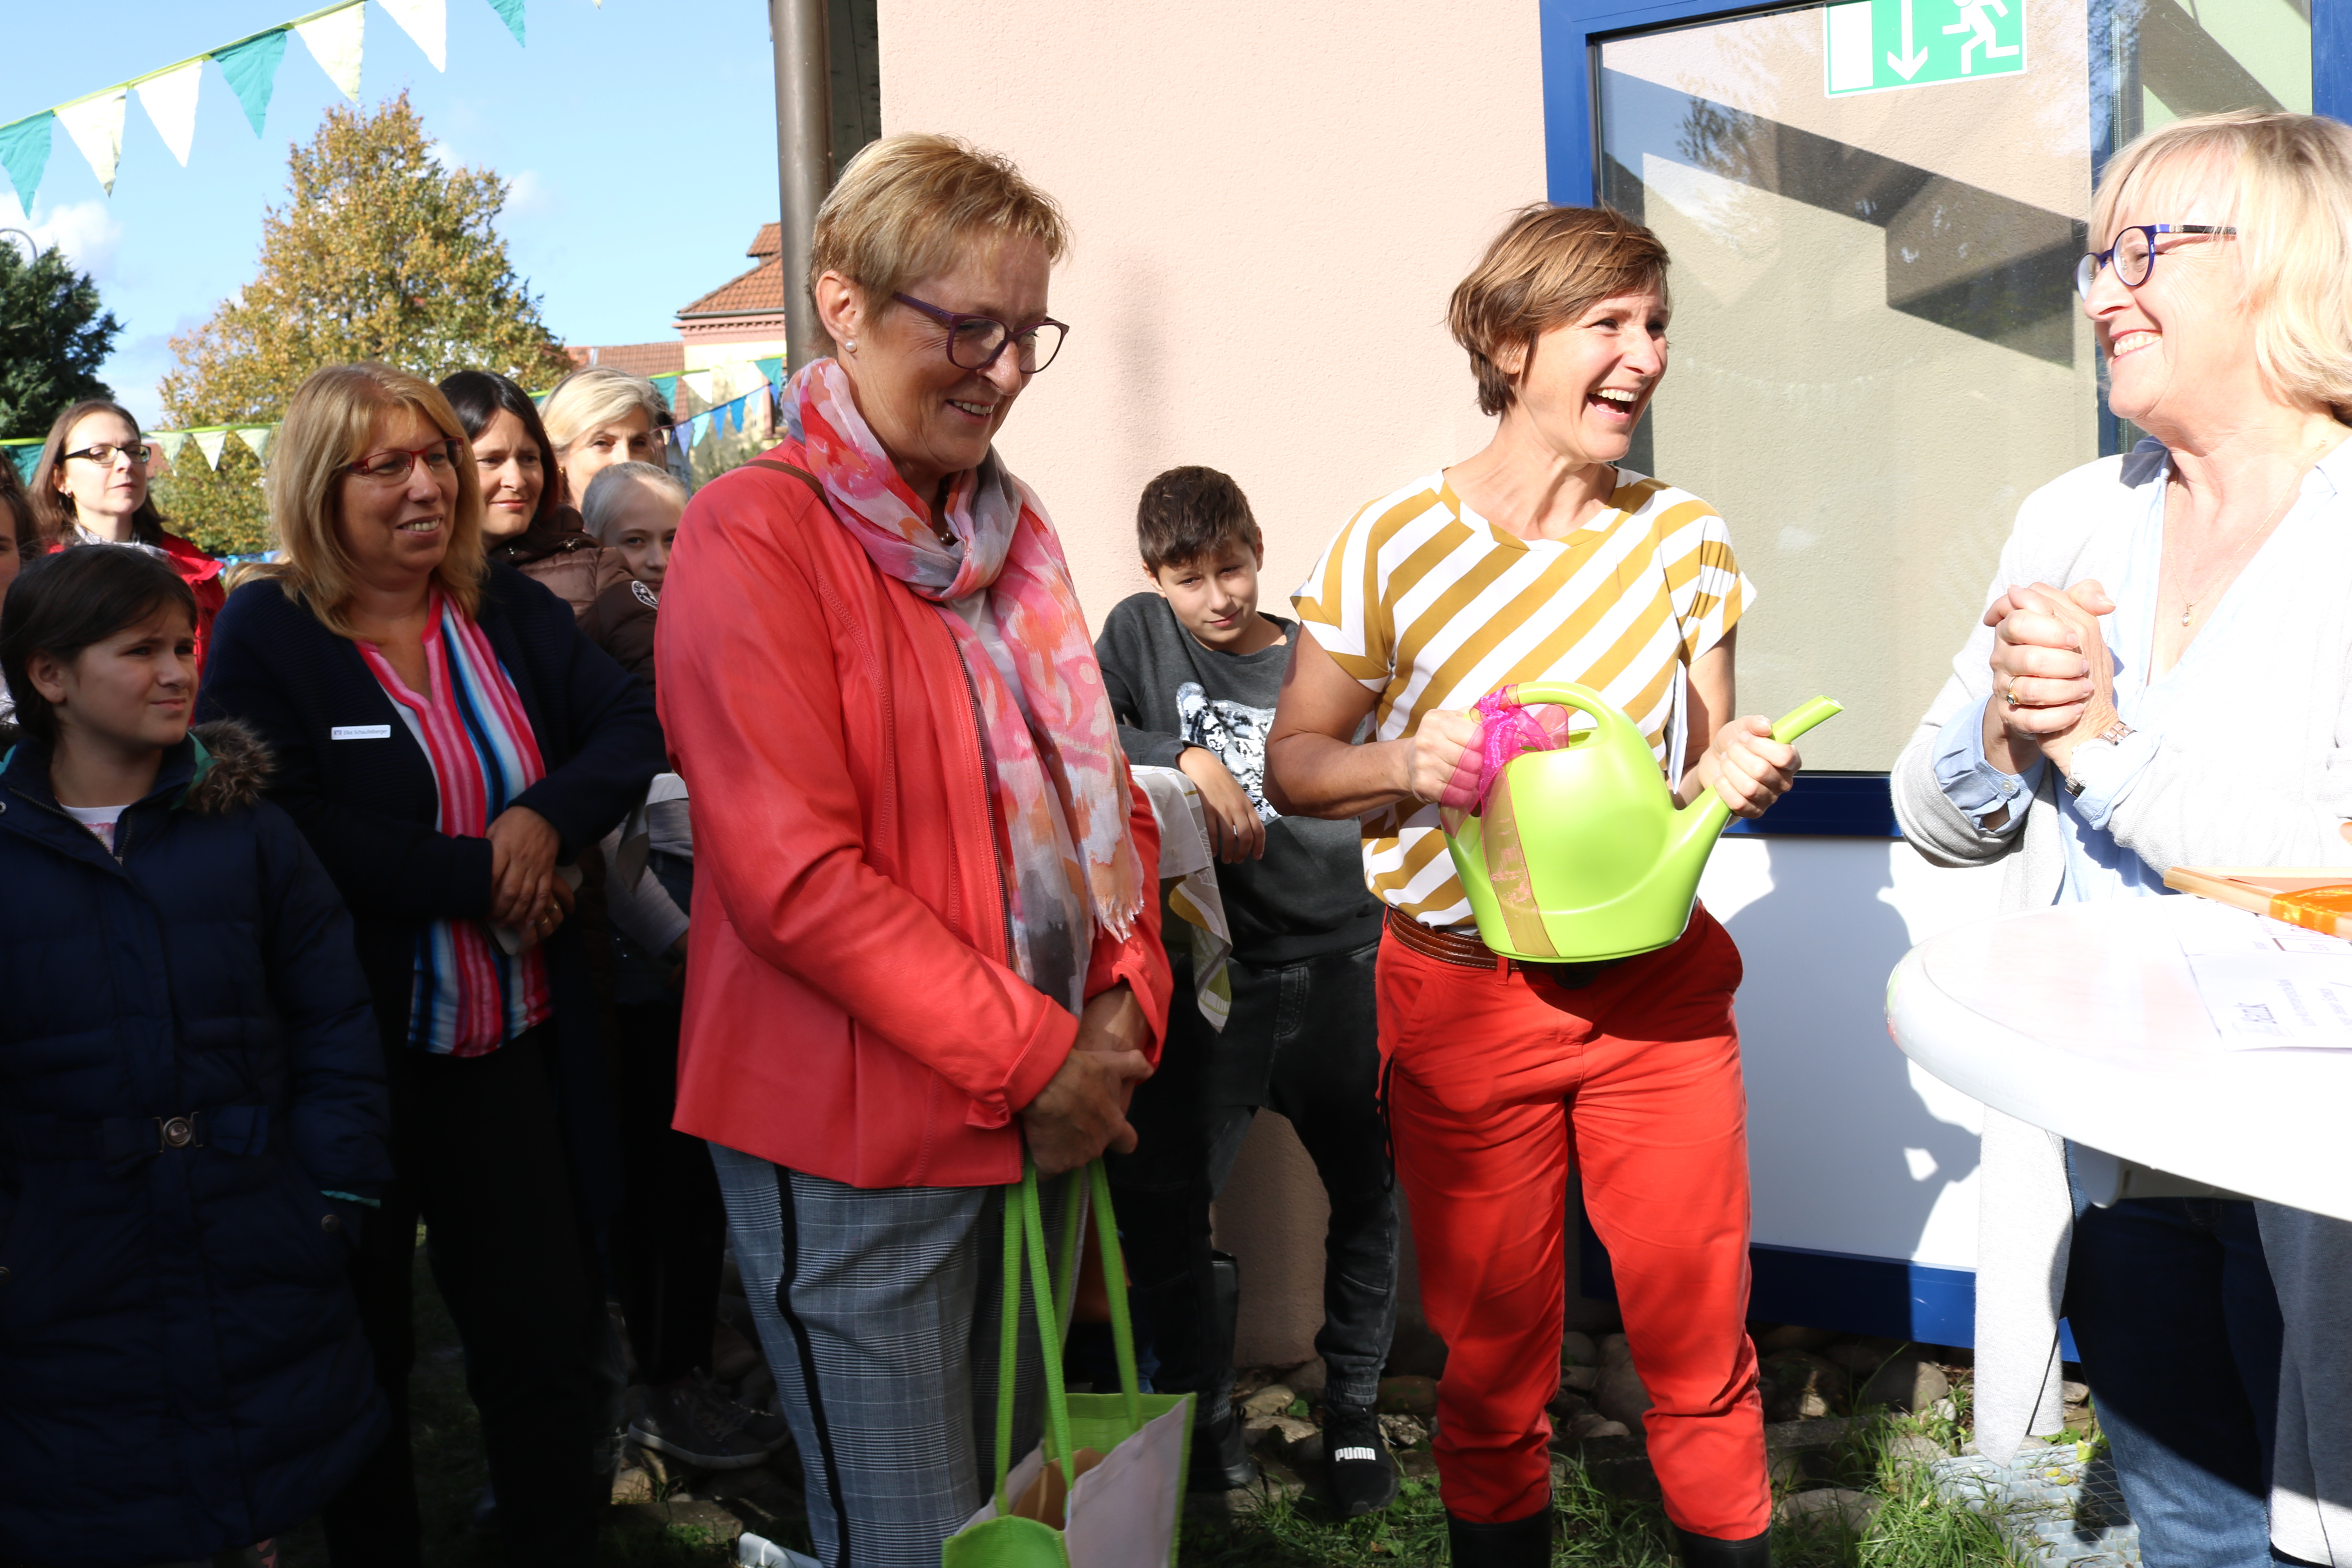  Marie-Luise Linckh, Präsidentin des Landfrauenverbands Württemberg-Baden (links) gratuliert Wanda Wieczorek (Mitte) zu der gelungenen Initiative und übereicht einen Scheck und ein symbolisches Gießkännchen. Rektorin Karin Sebold hat das Projekt wohlwollend unterstützt 